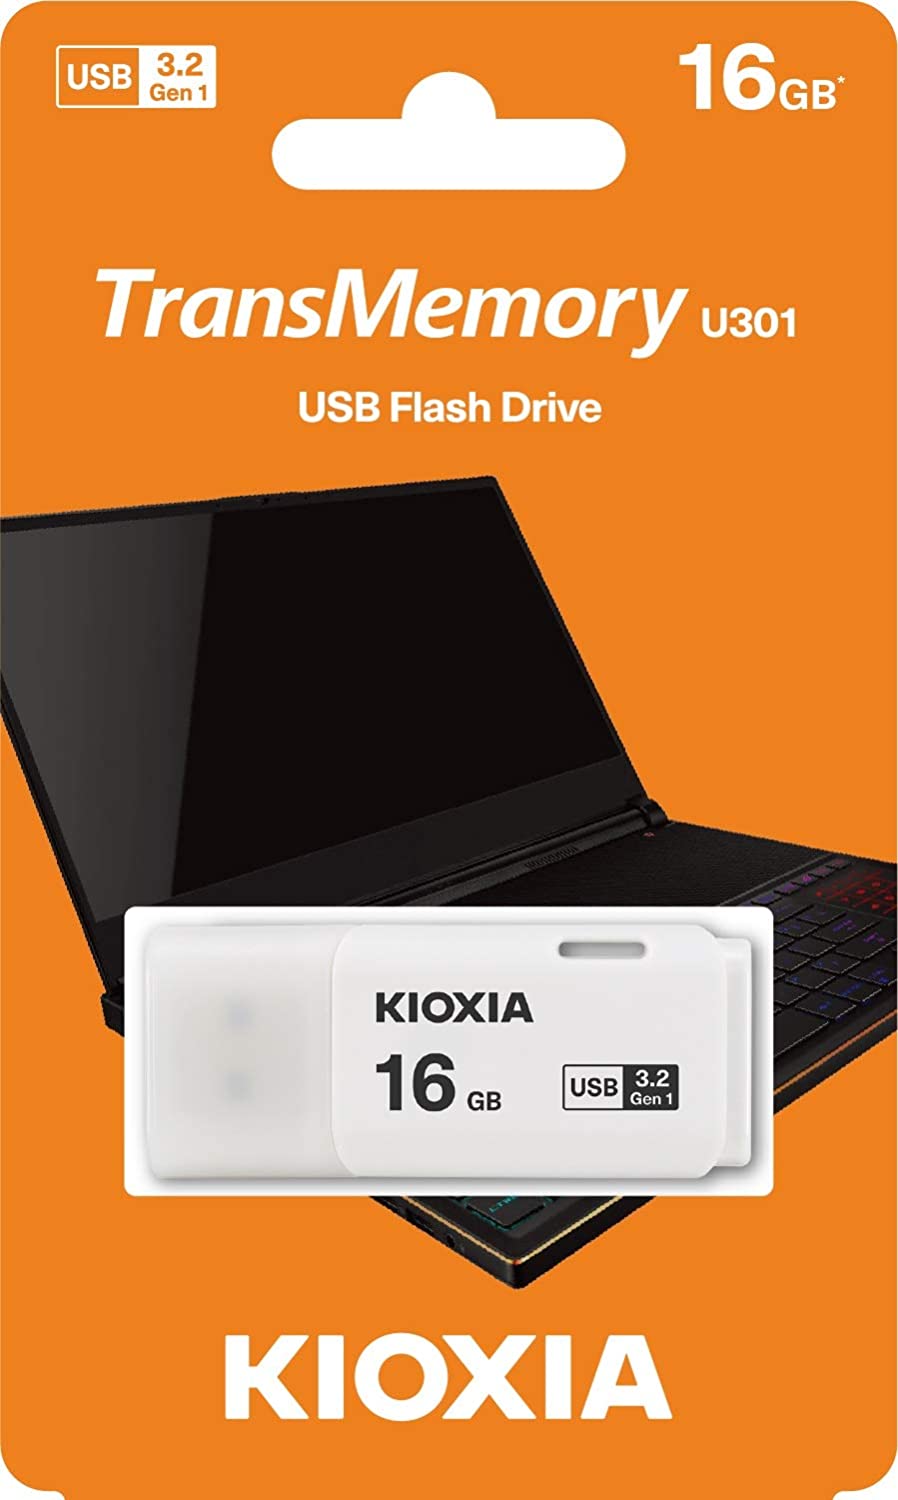 Kioxia USB-Flashdrive 16 GB USB3.0 TransMemory U301, Weiß